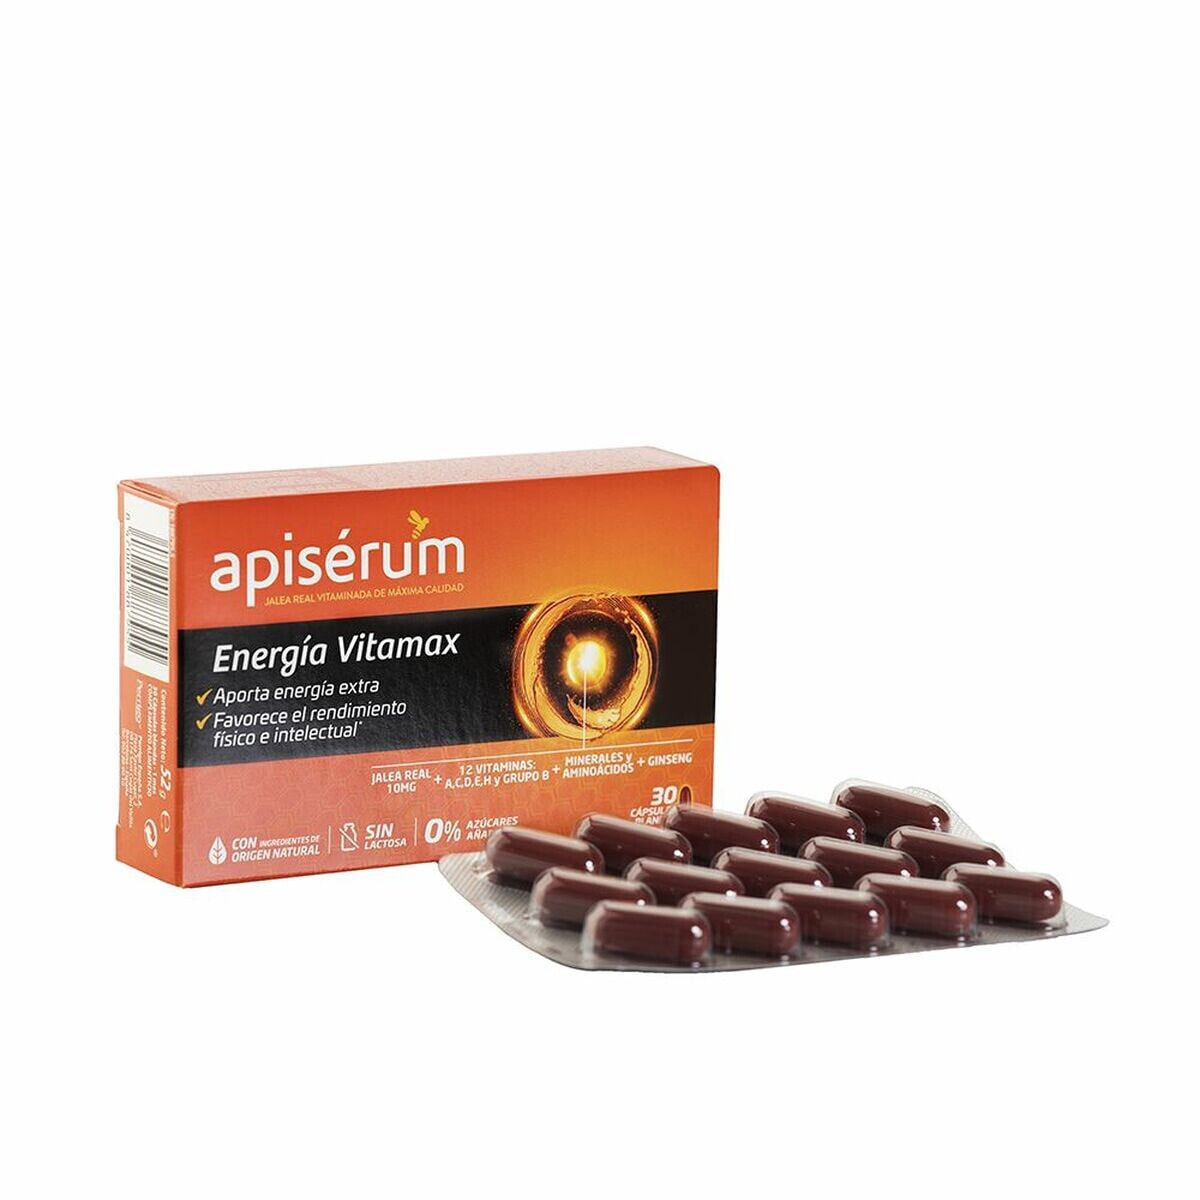 Food Supplement Apiserum Energía Vitamax 30 Units